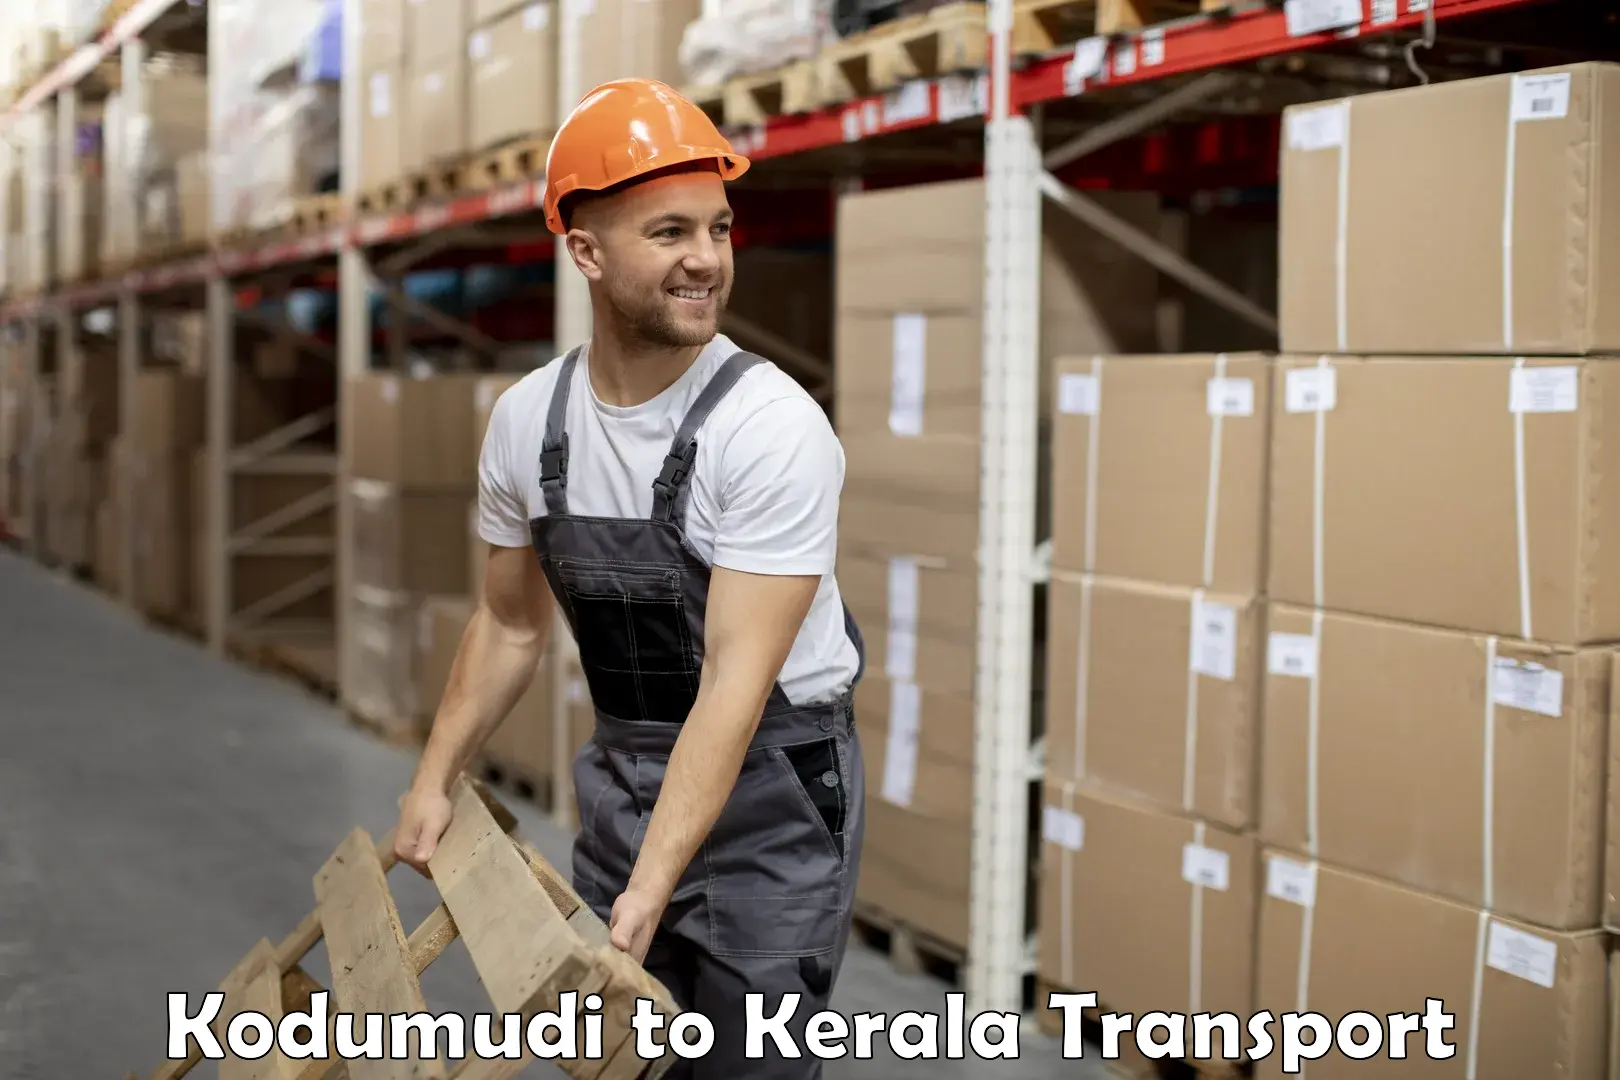 Shipping partner Kodumudi to Kuthiathode